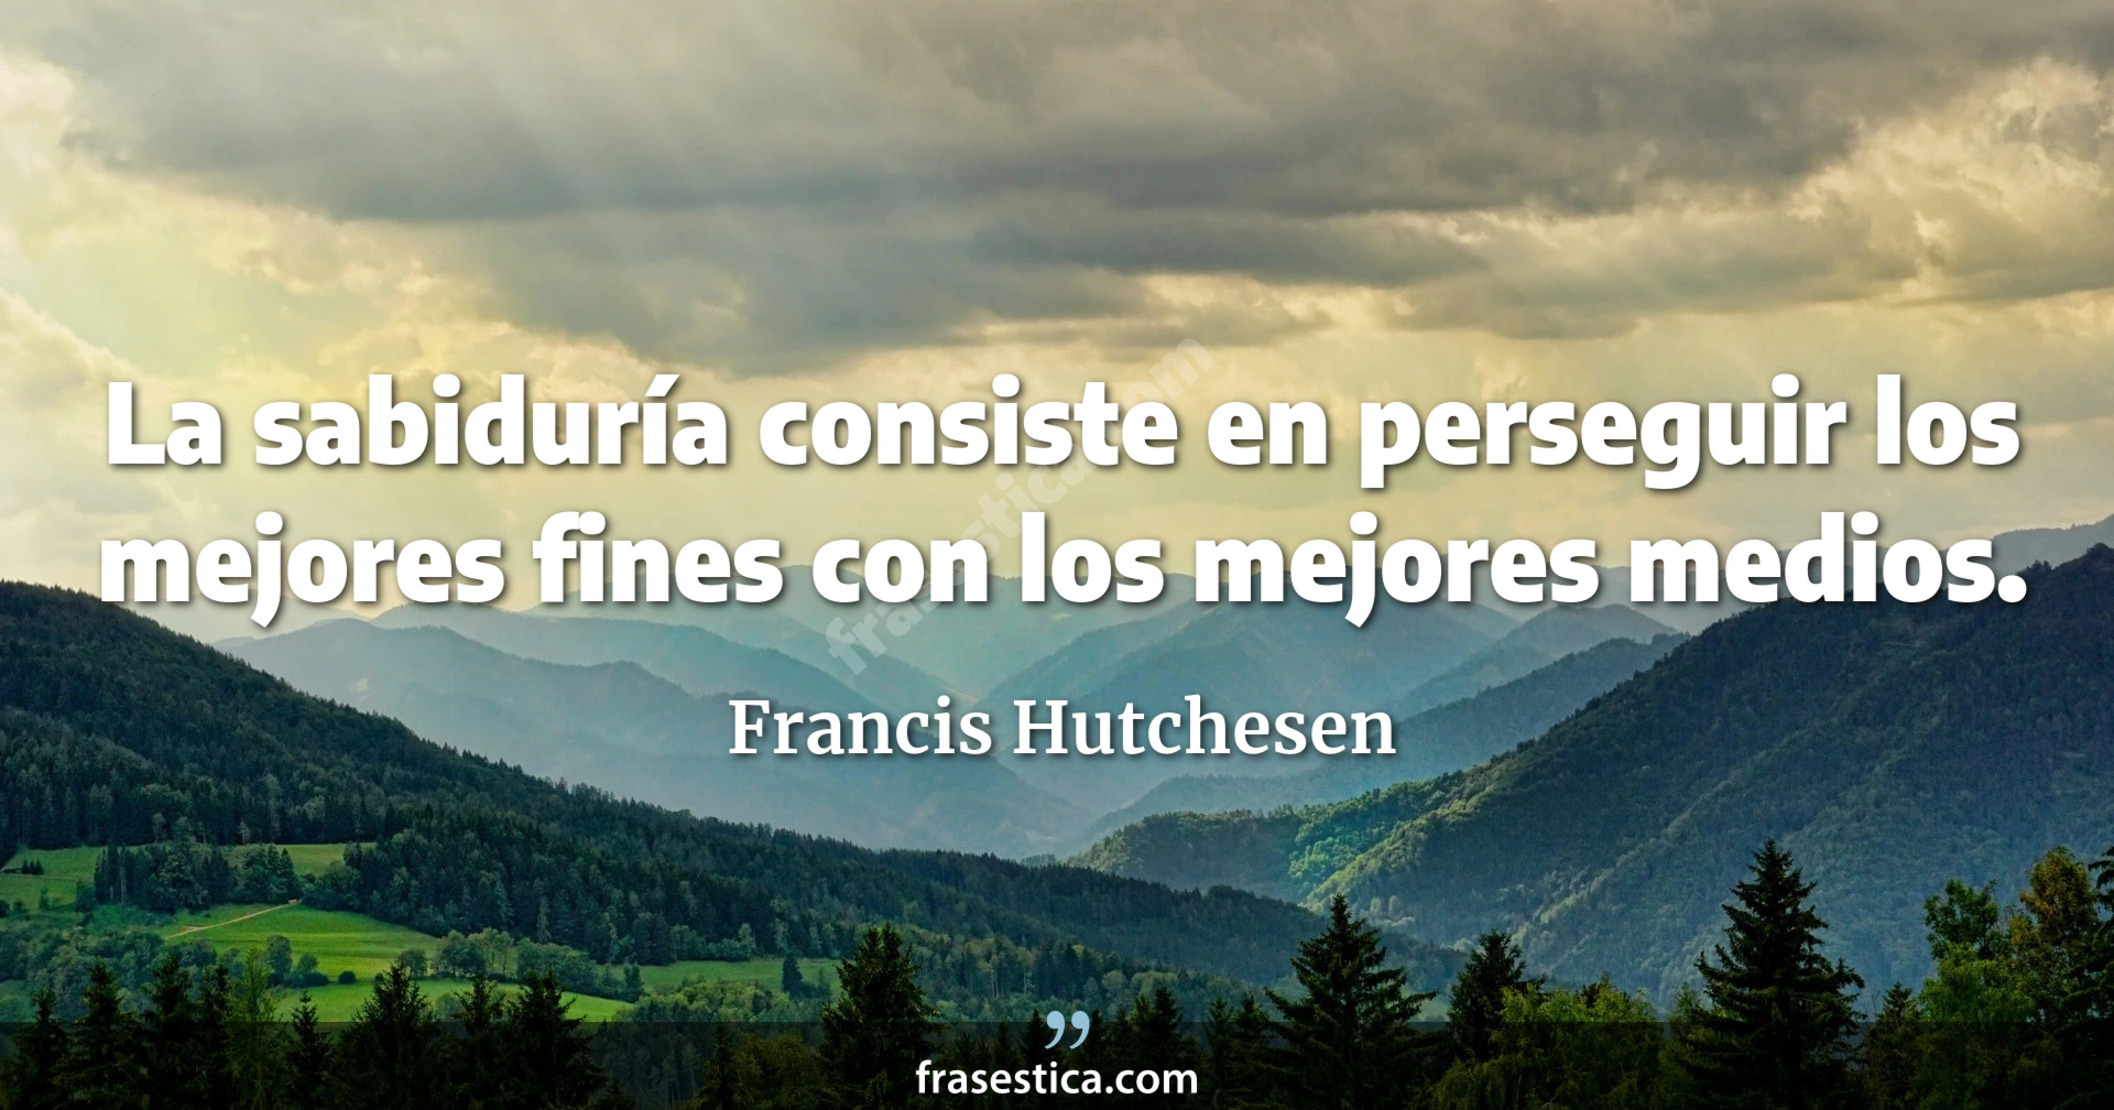 La sabiduría consiste en perseguir los mejores fines con los mejores medios. - Francis Hutchesen